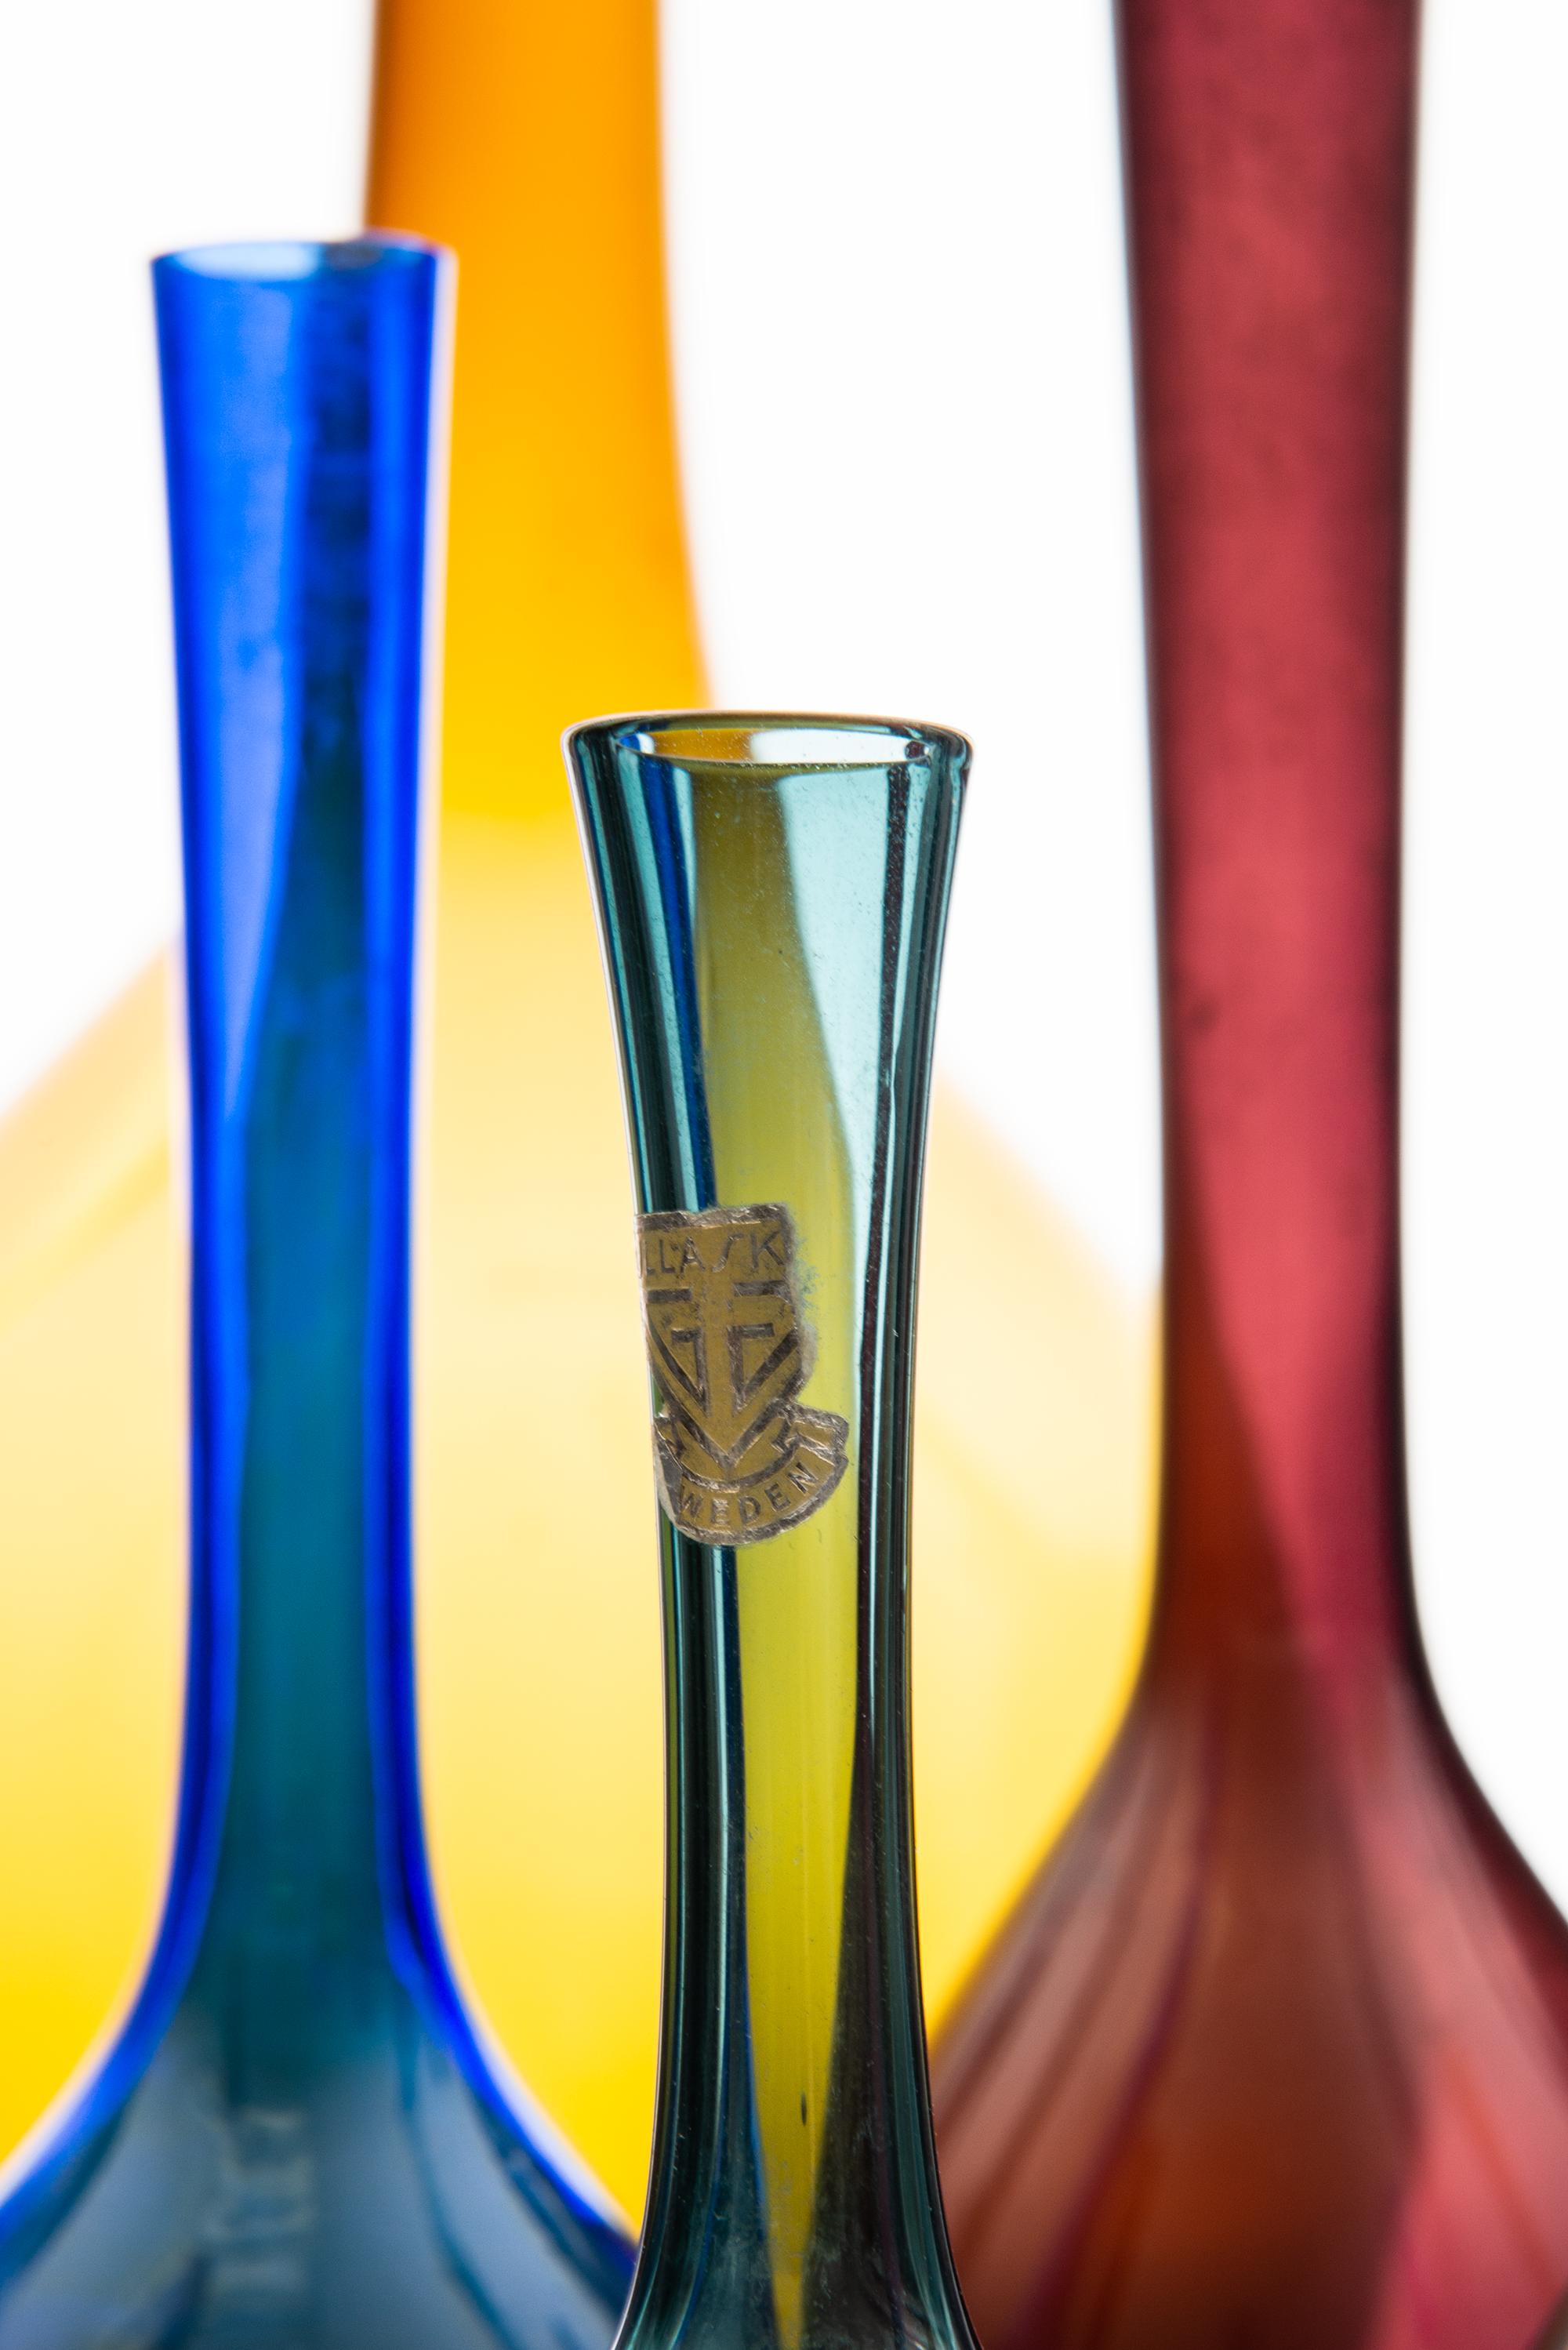 Scandinavian Modern Arthur Percy glass vases produced by Gullaskruf in Sweden